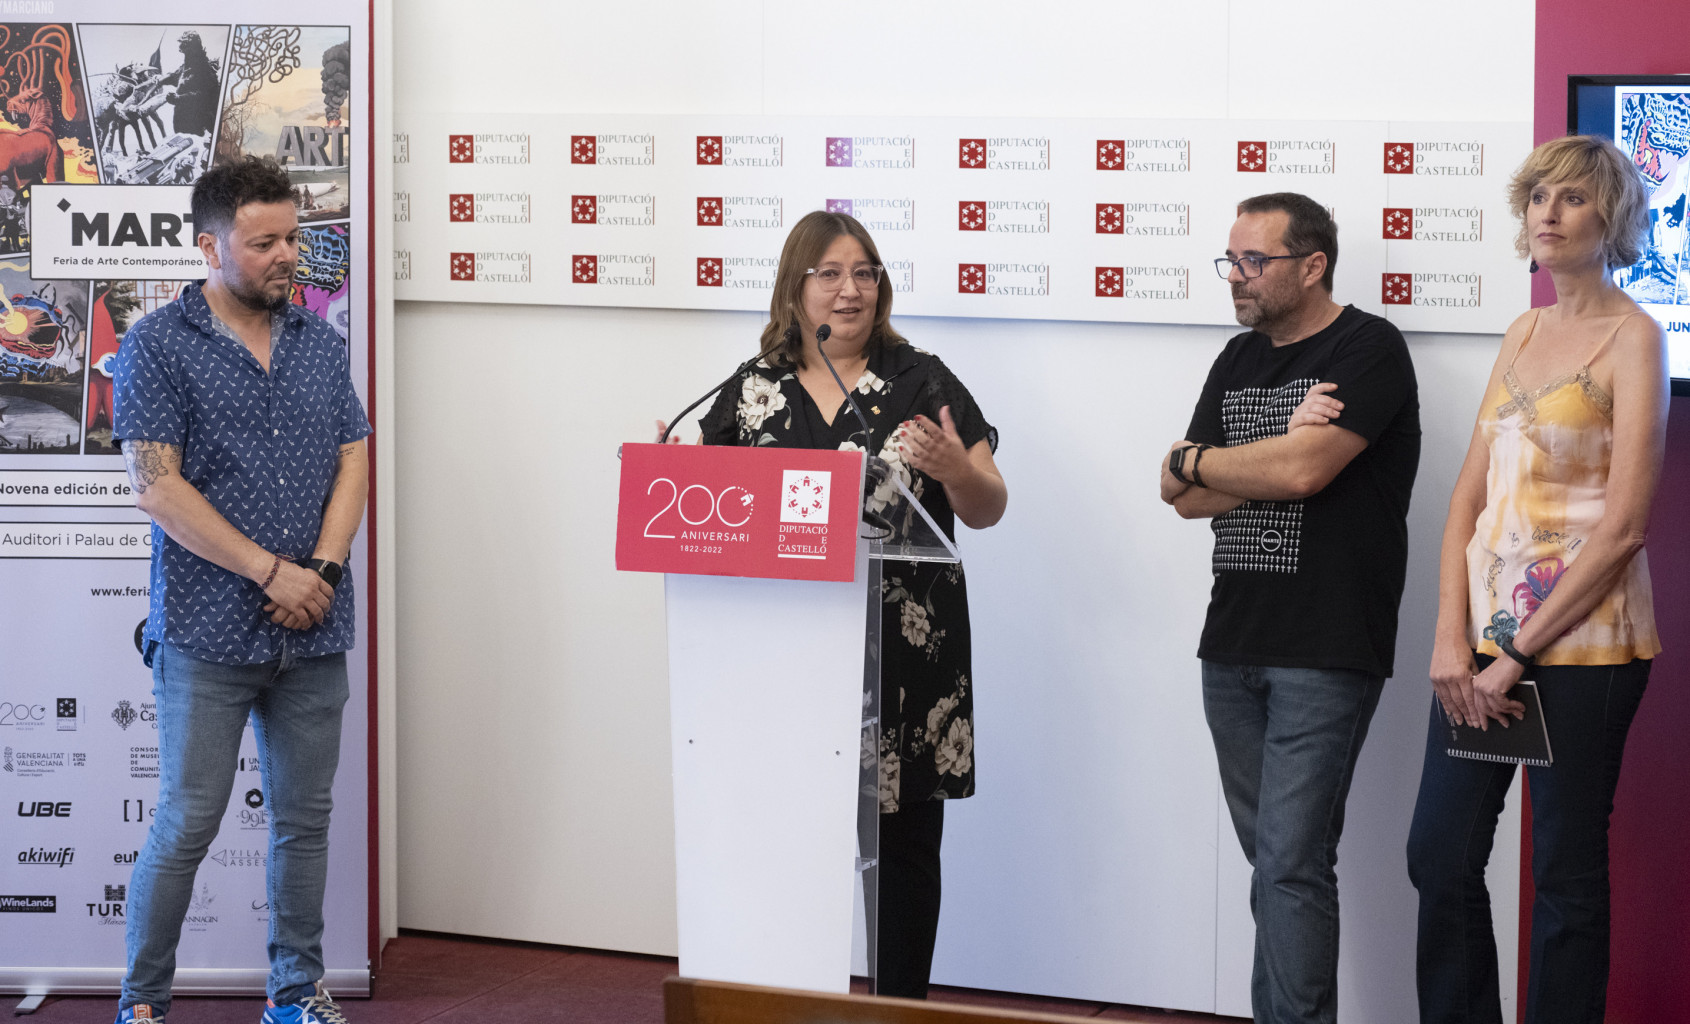 La diputación de Castellón ha presentado la Feria de Arte Contemporáneo ‘Marte’ que dará comienzo el jueves 16 de junio